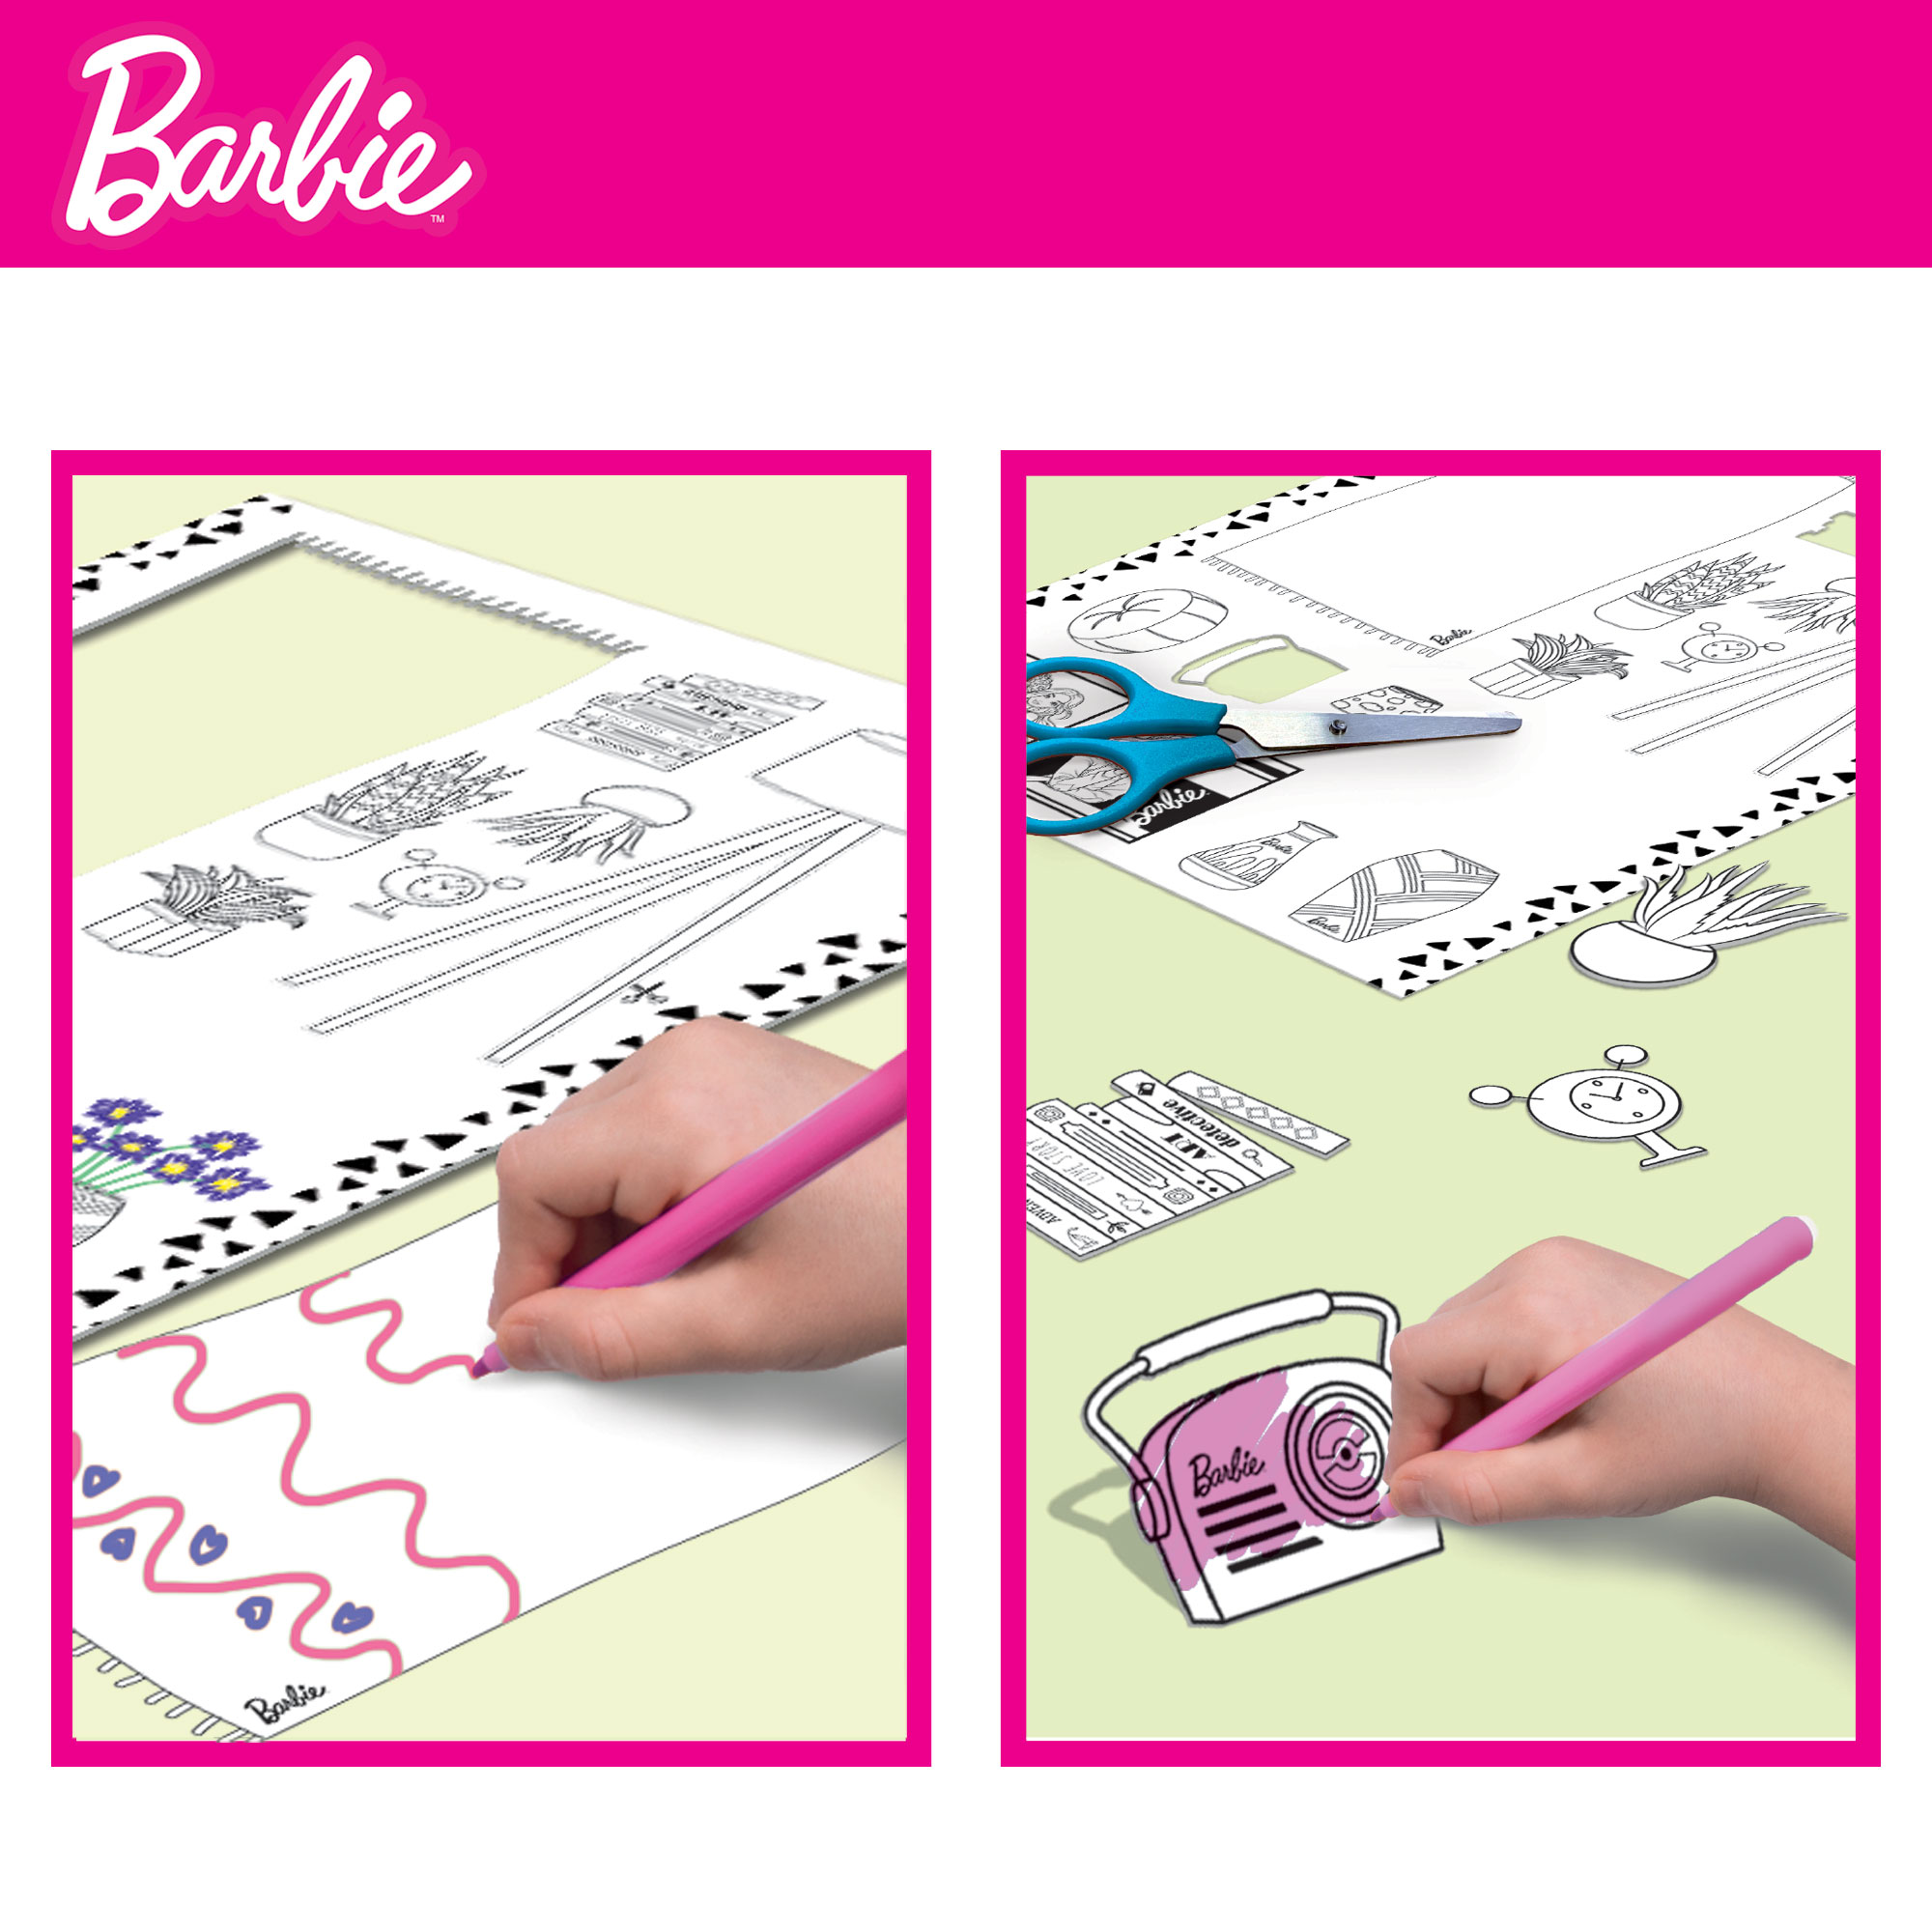 Spielset mehrfarbig Barbie Lisciani Barbie Lernspiele, mit BARBIE von Barbie Loft Puppe,